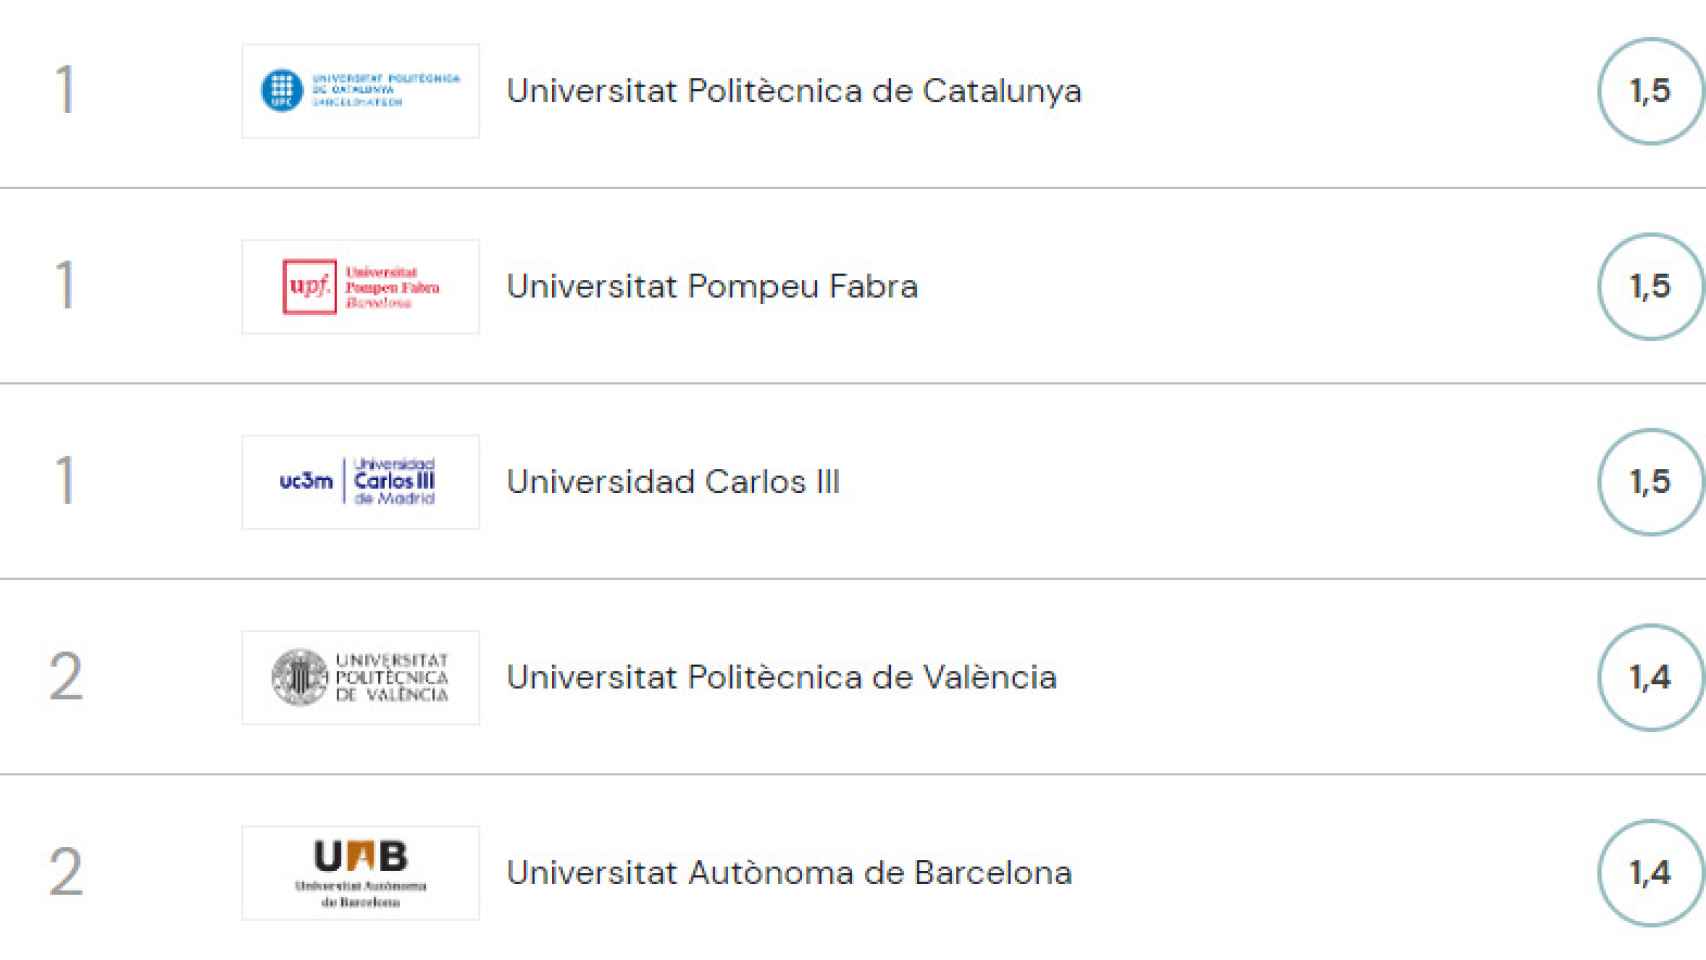 Primeras posiciones de universidades según Uranking 2022.